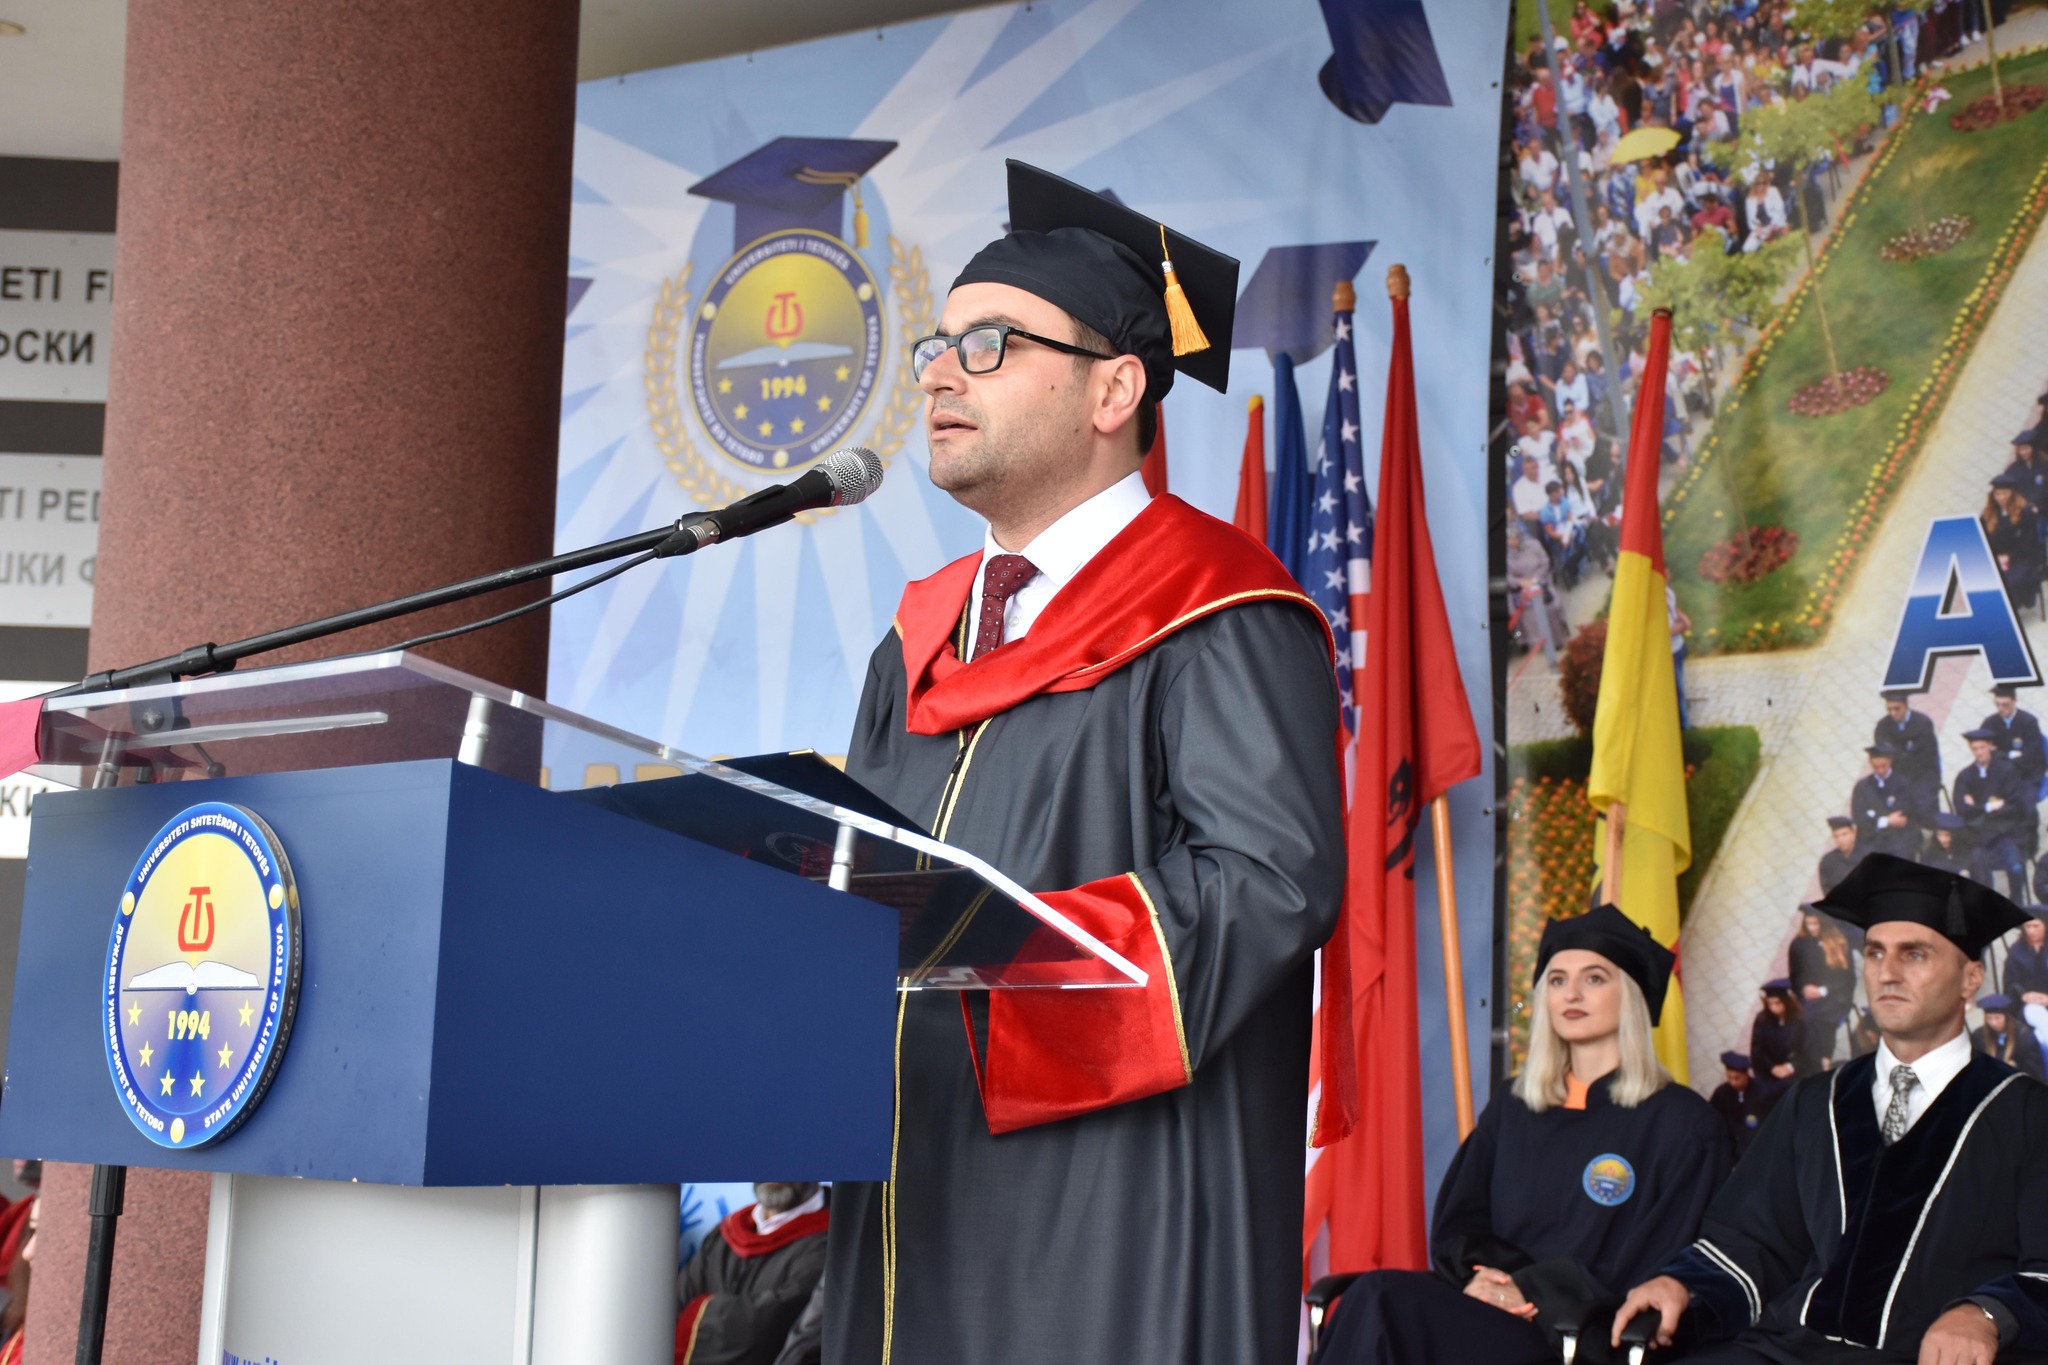 Rektori Prof. Dr. Kushtrim Ahmeti: UT për të gjithë ne ka qenë dhe do të mbetet misioni ynë jetësor dhe hyjnor